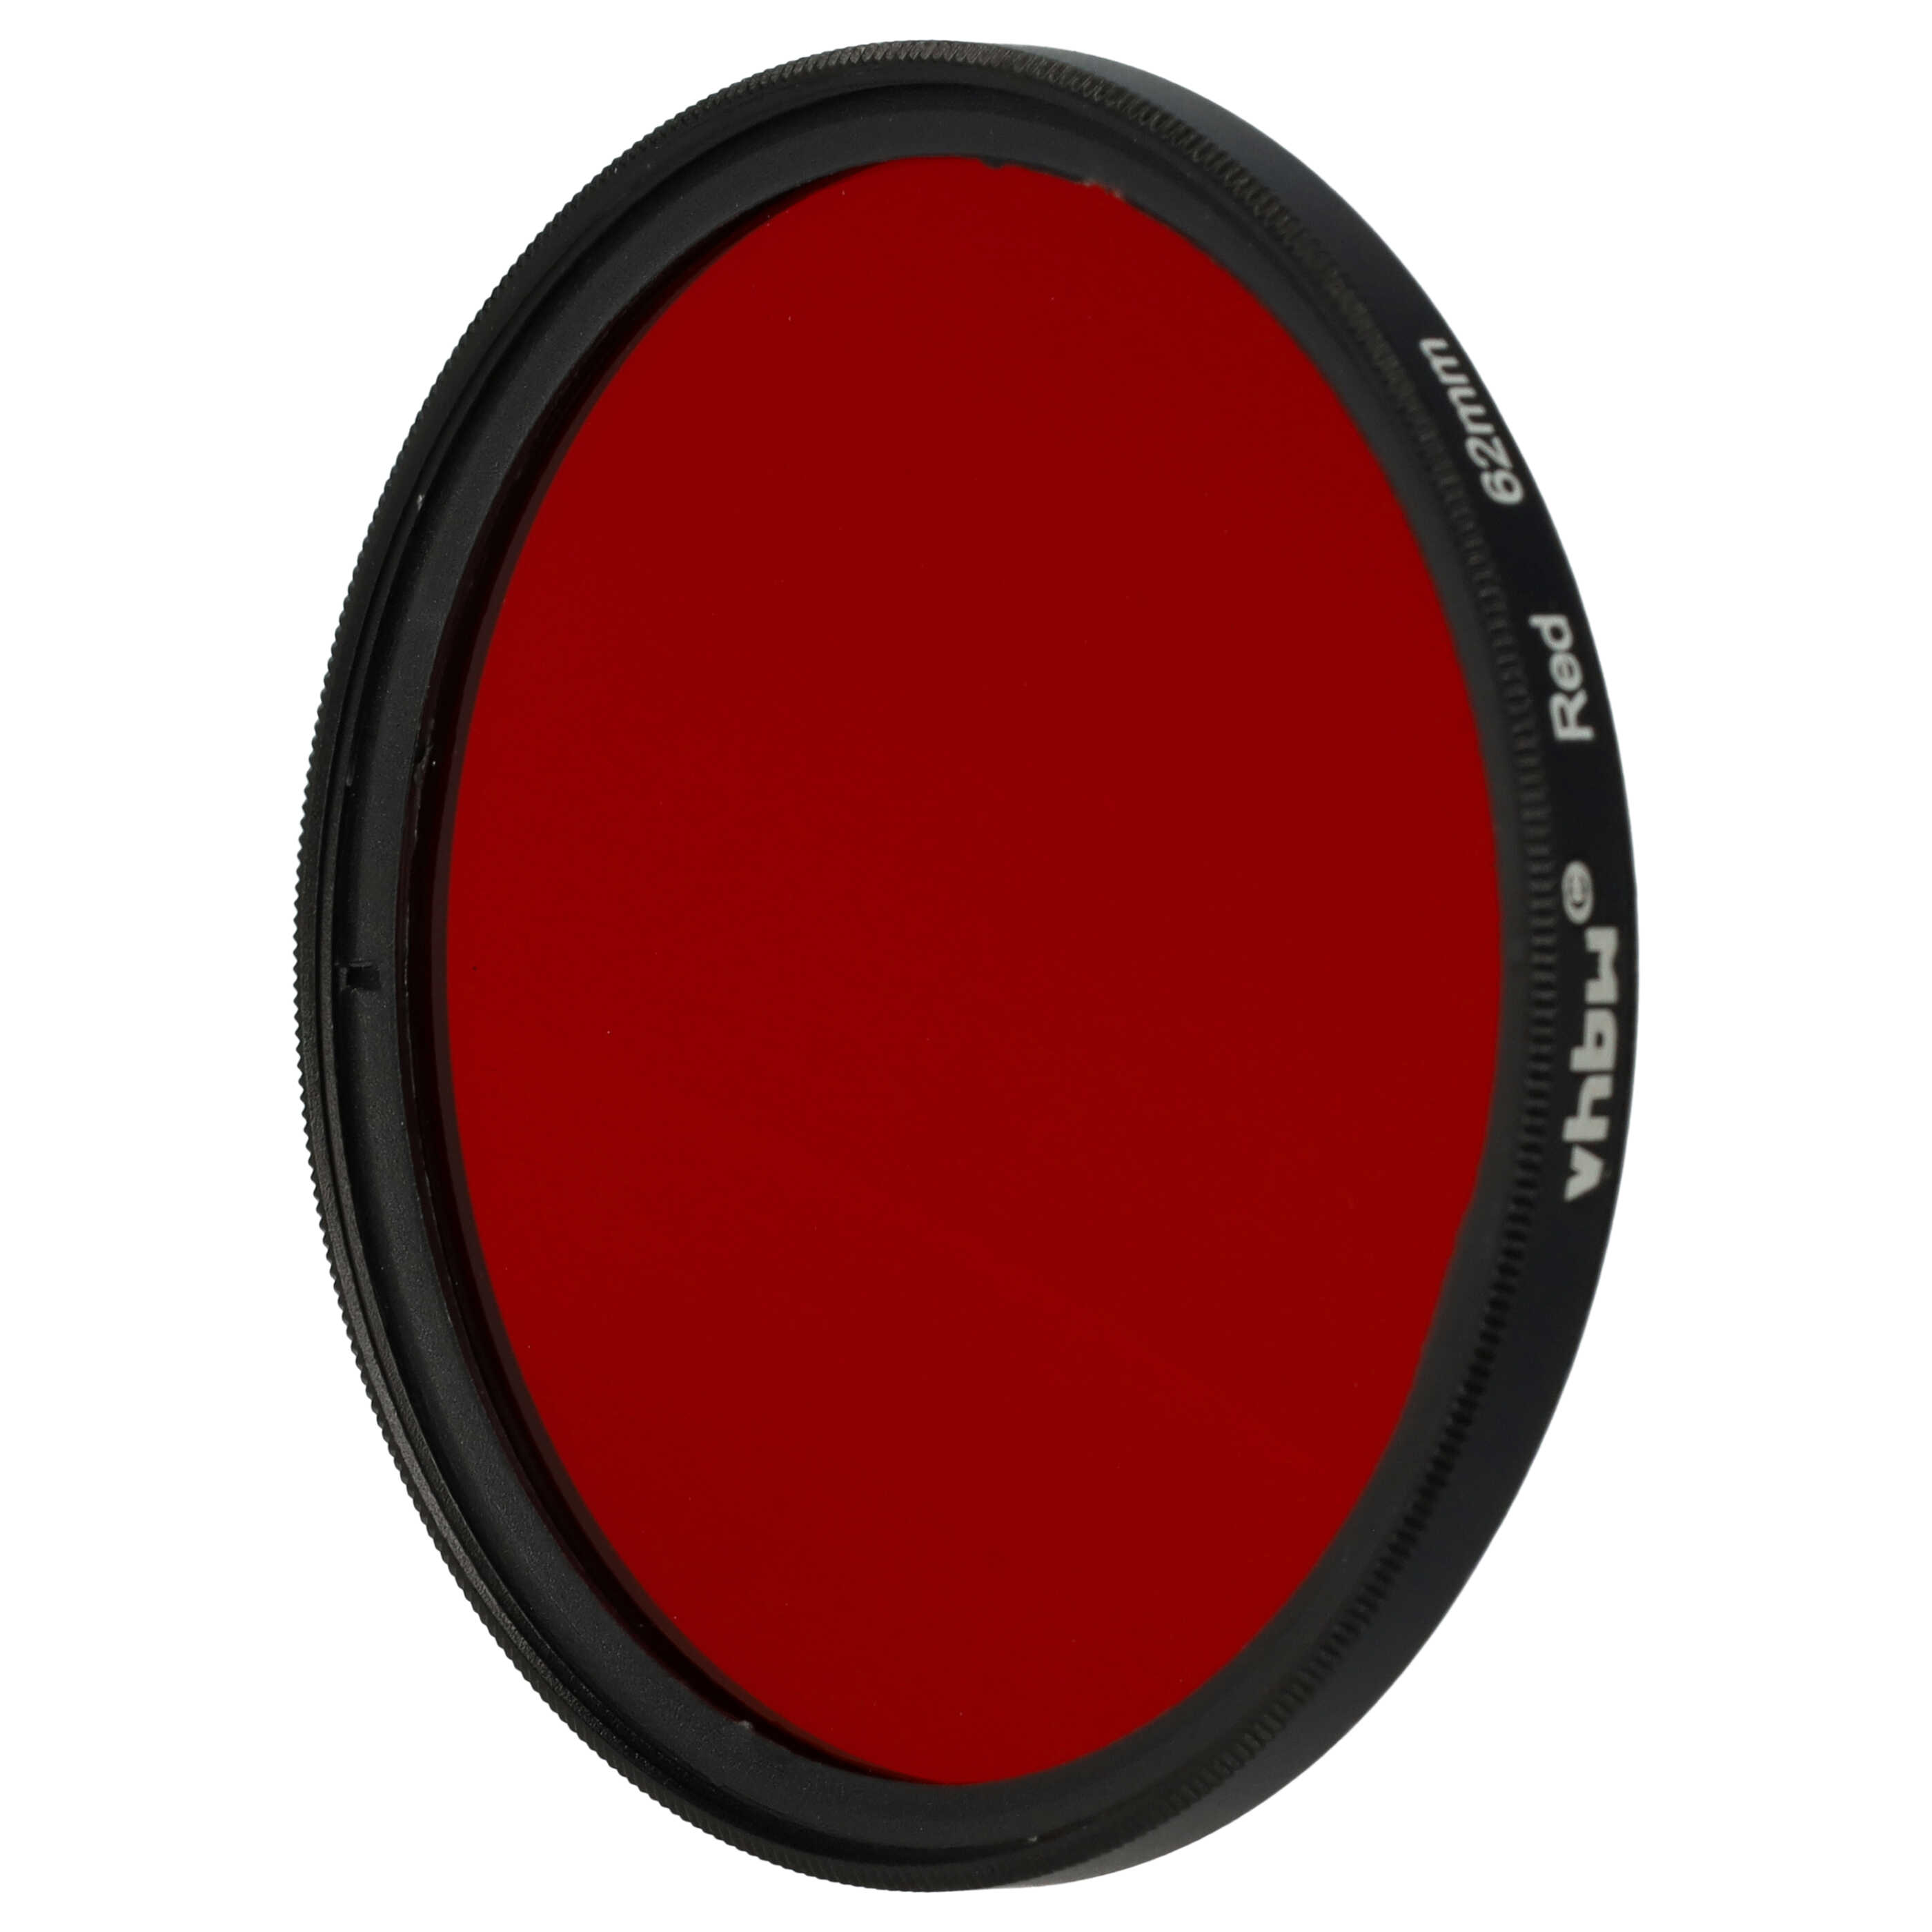 Filtro de color para objetivo de cámara con rosca de filtro de 62 mm - Filtro rojo